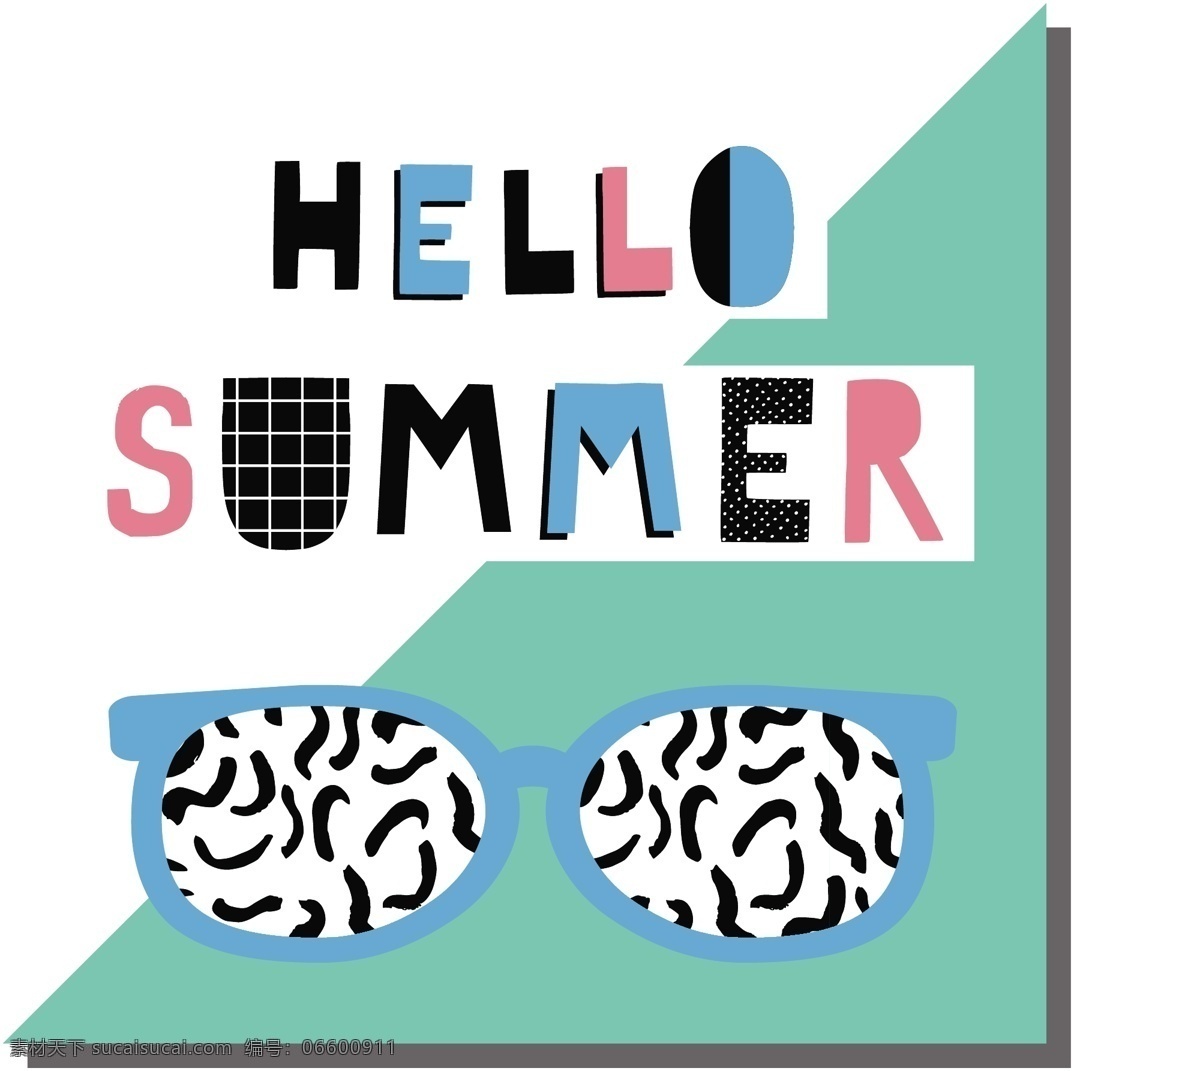 夏天 卡通 度假 眼镜 墨镜 绿色 条纹 涂鸦 夏日 暑假 甜筒 创意 小清新 填充 插画 背景 海报 广告 包装 印刷